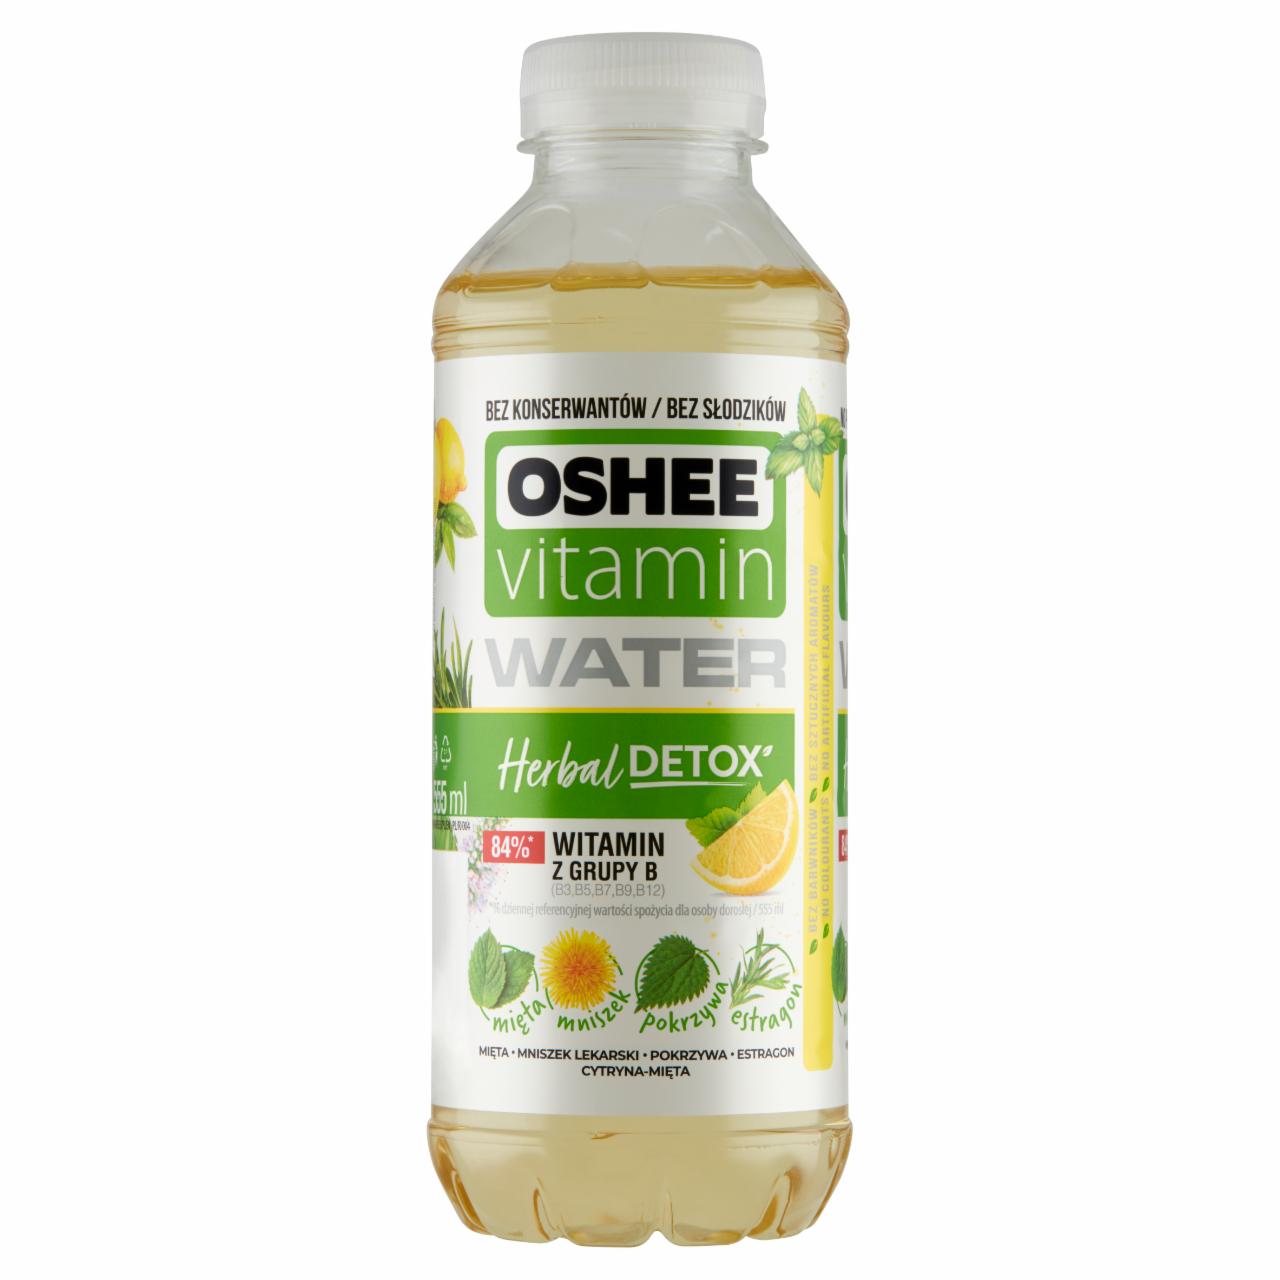 Zdjęcia - Oshee Vitamin Water Herbal Detox Napój niegazowany o smaku cytryny z miętą 555 ml